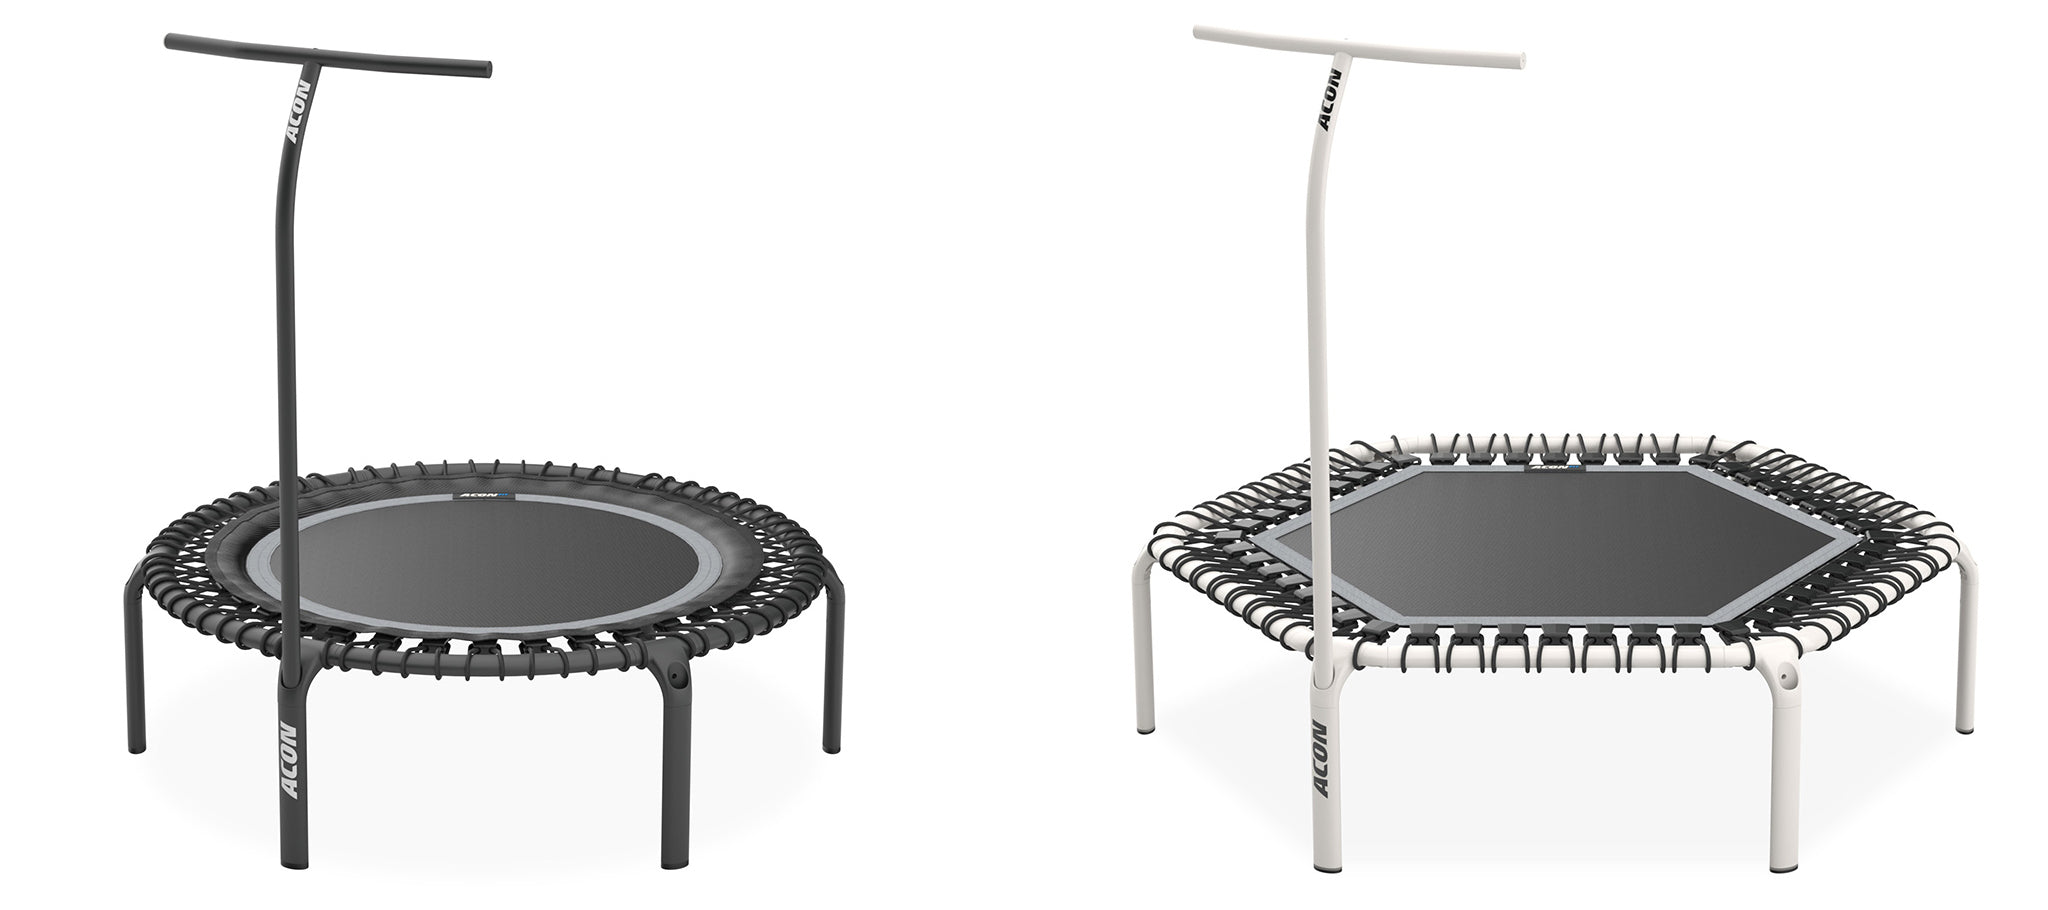 Kaksi ACON fitness trampoliinia kahvatangoilla. Vasemmalla puolella oleva fitness trampoliini on pyöreä musta ja oikealla oleva on valkoinen hexagon.